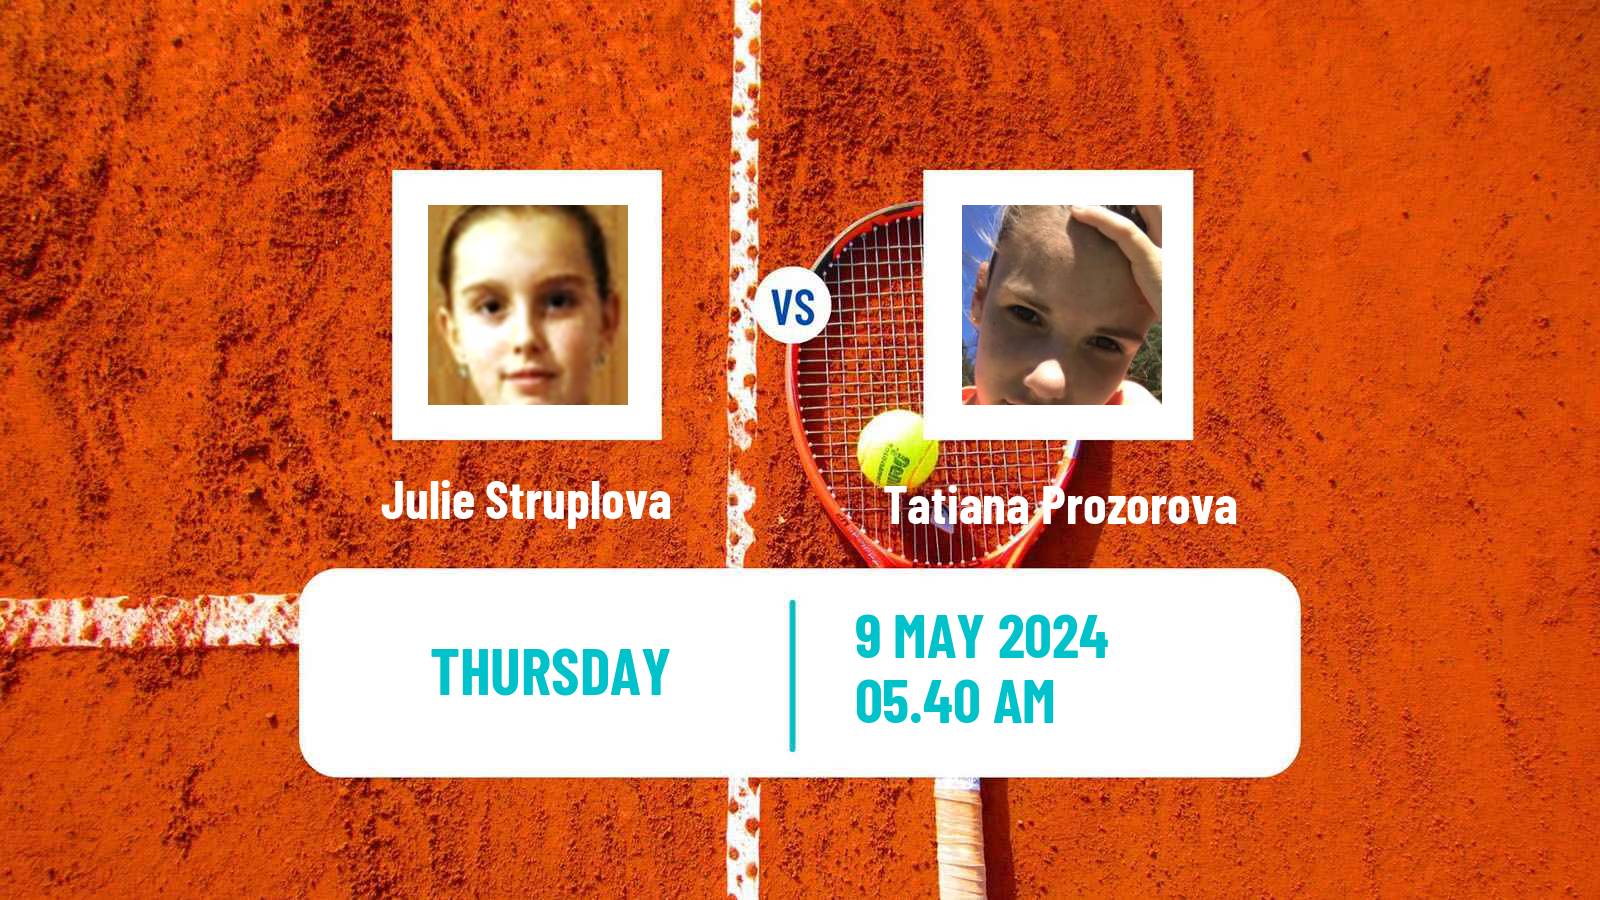 Tennis ITF W75 Trnava 2 Women Julie Struplova - Tatiana Prozorova